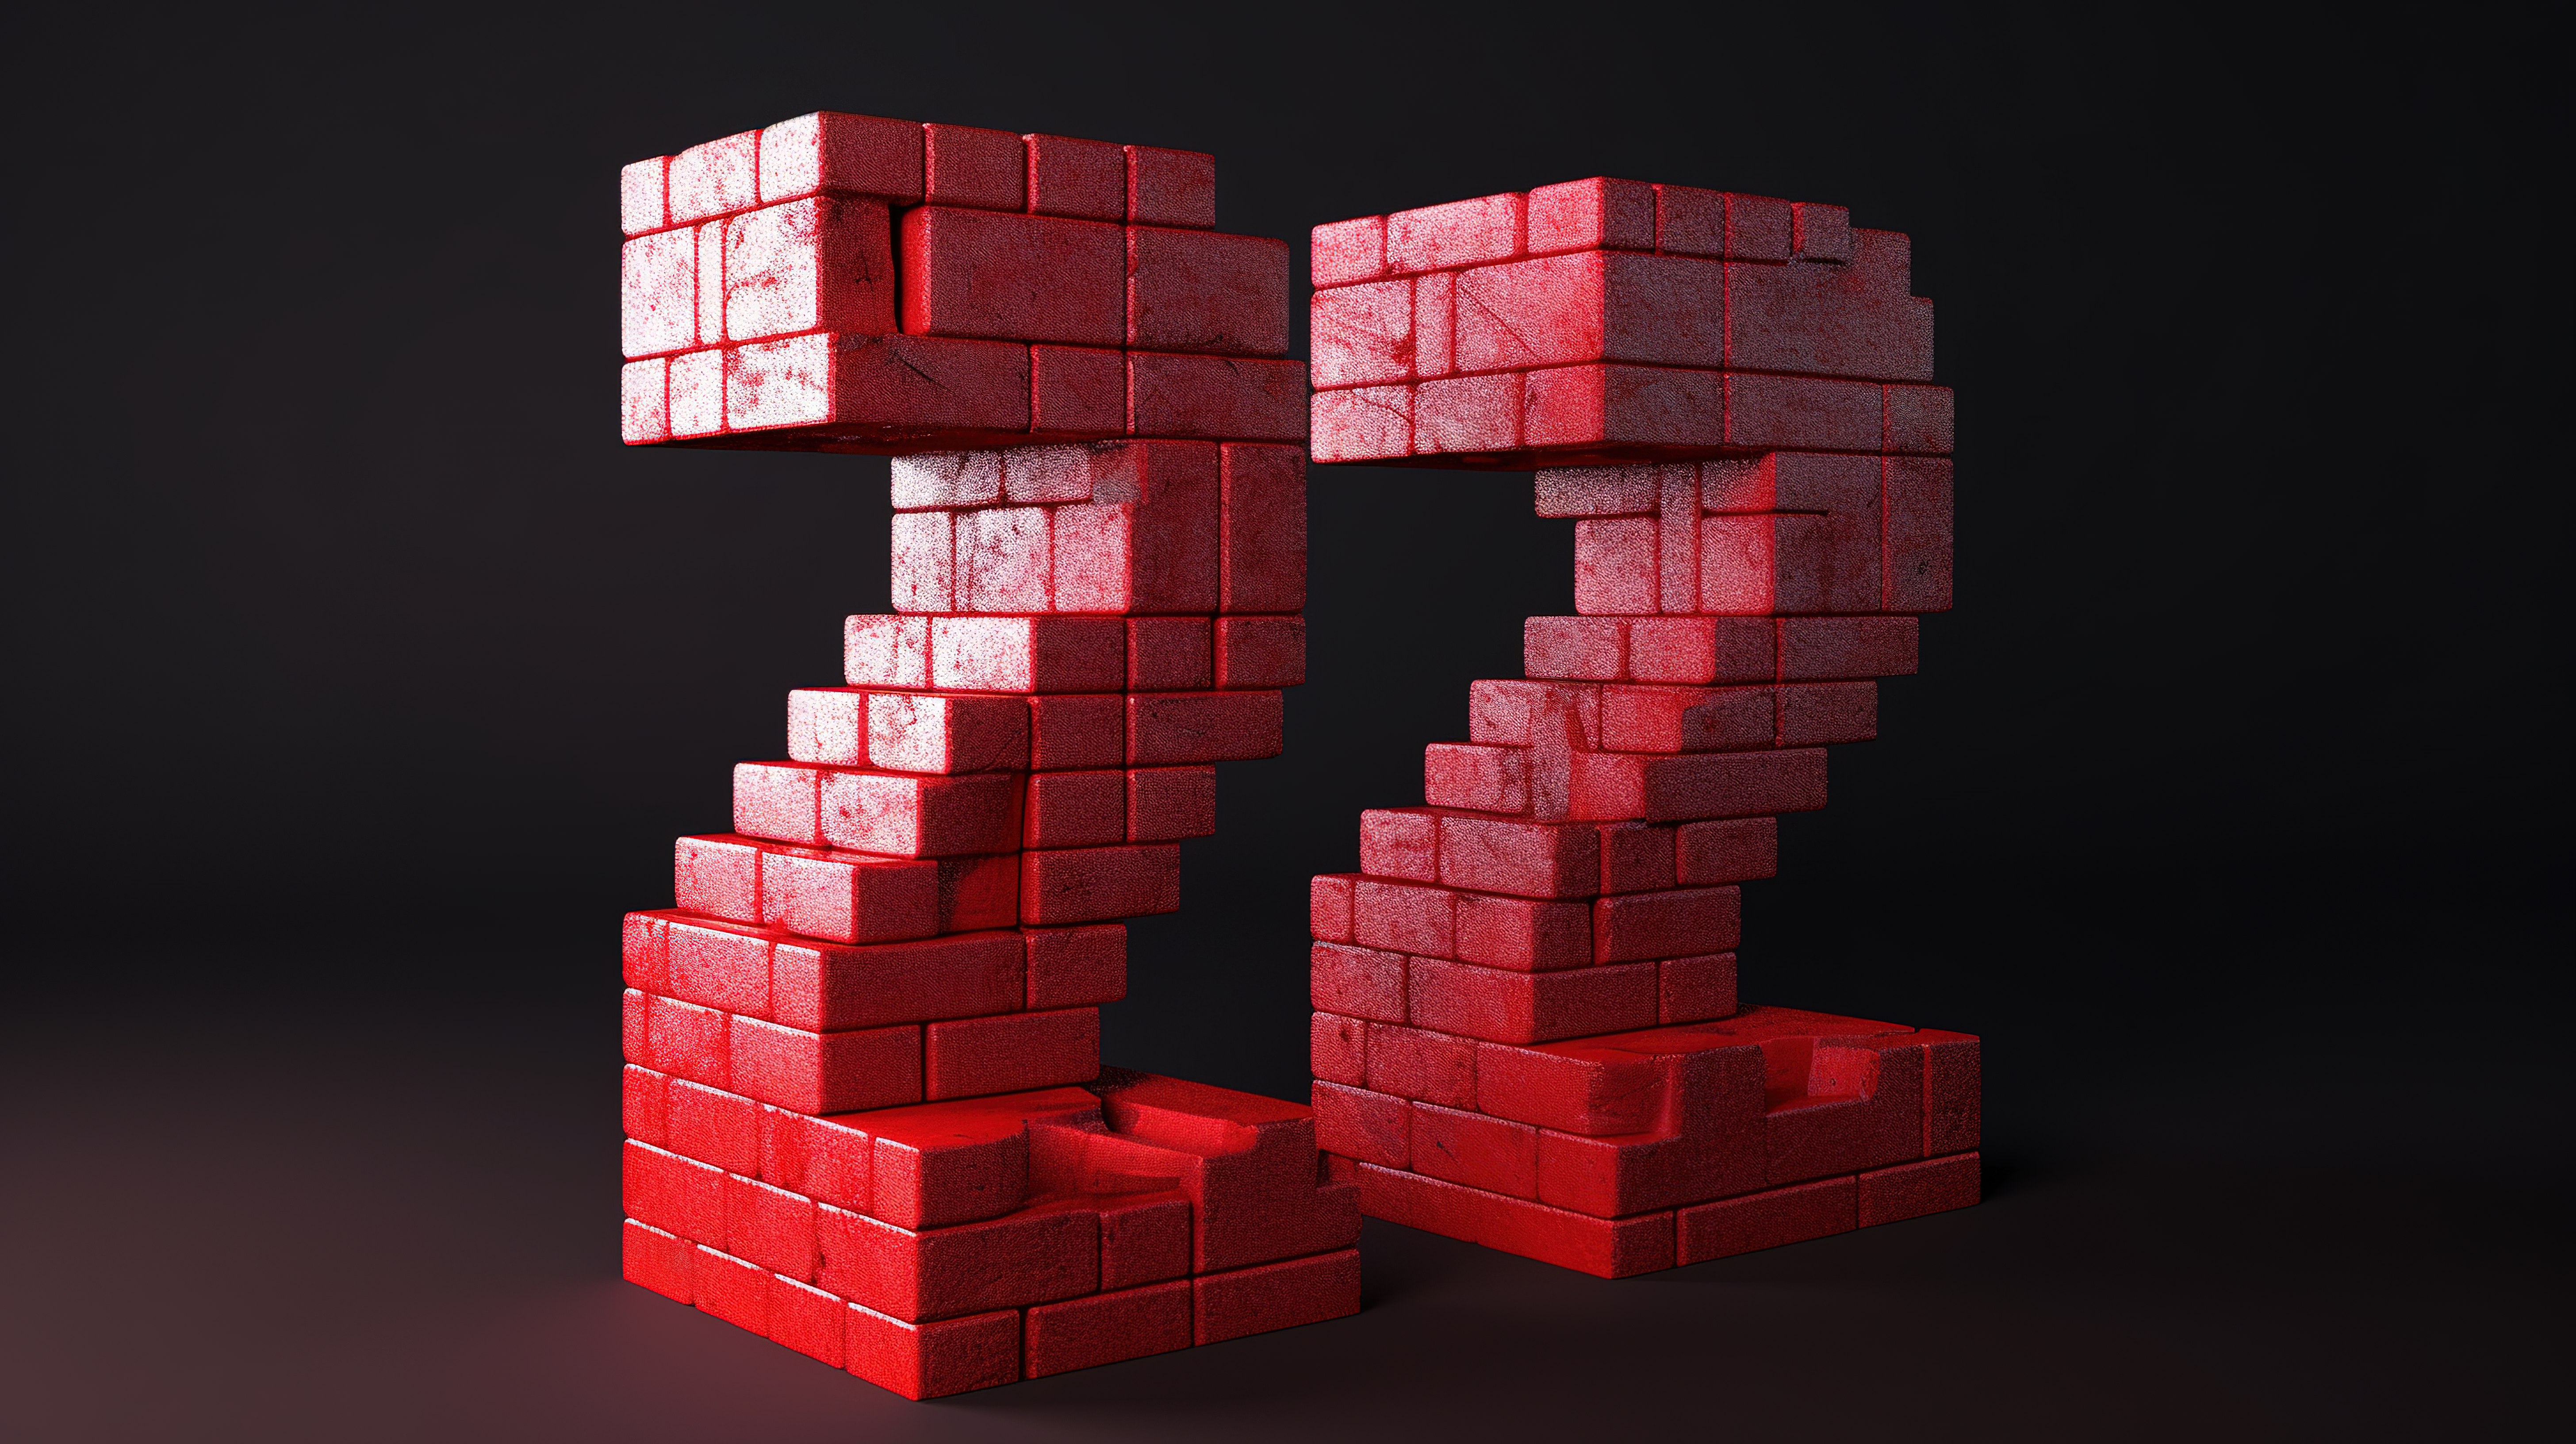 数字 2 由 3d 渲染中的积木构成，描绘了用于形成数字的红砖的概念图片